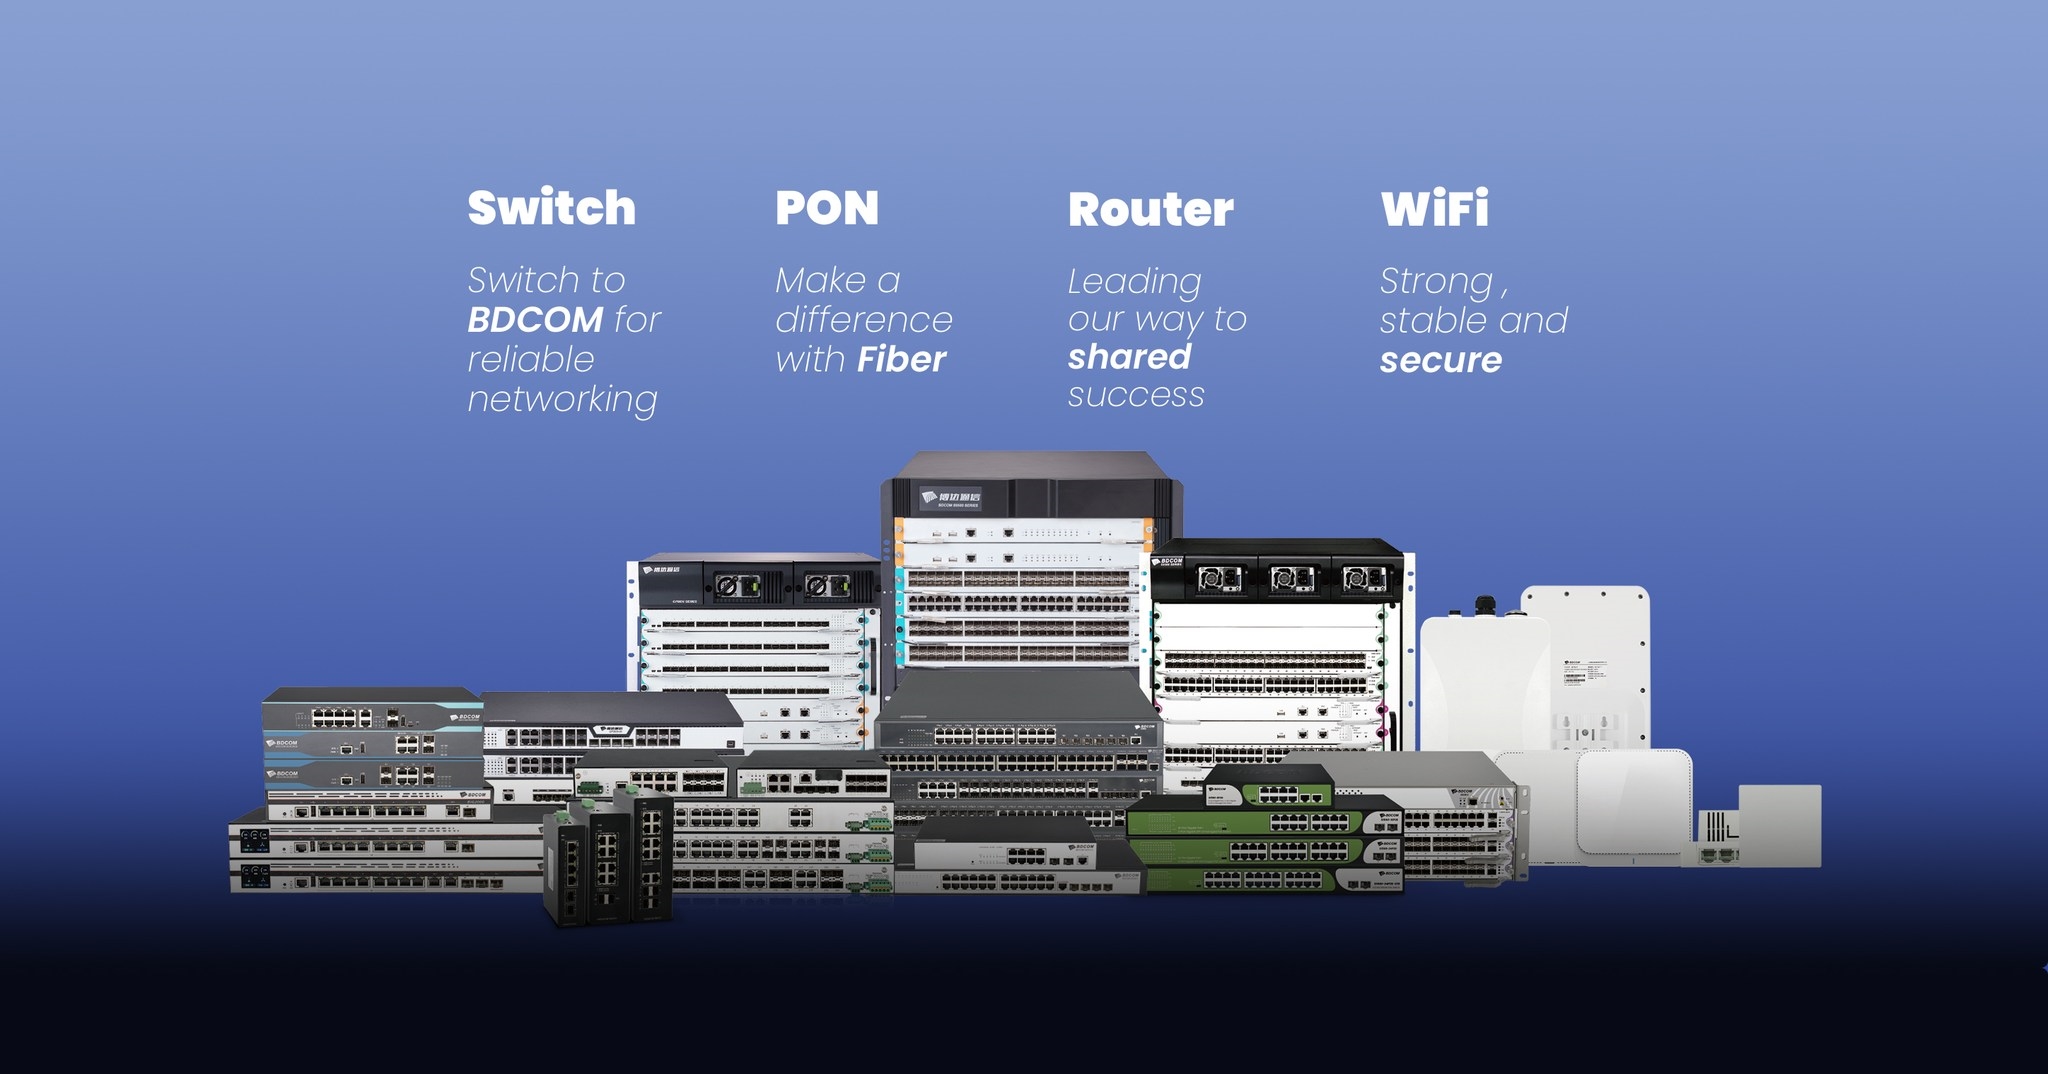 Thiết bị mạng BDCOM đa dạng với switch, PON, Router, wifi